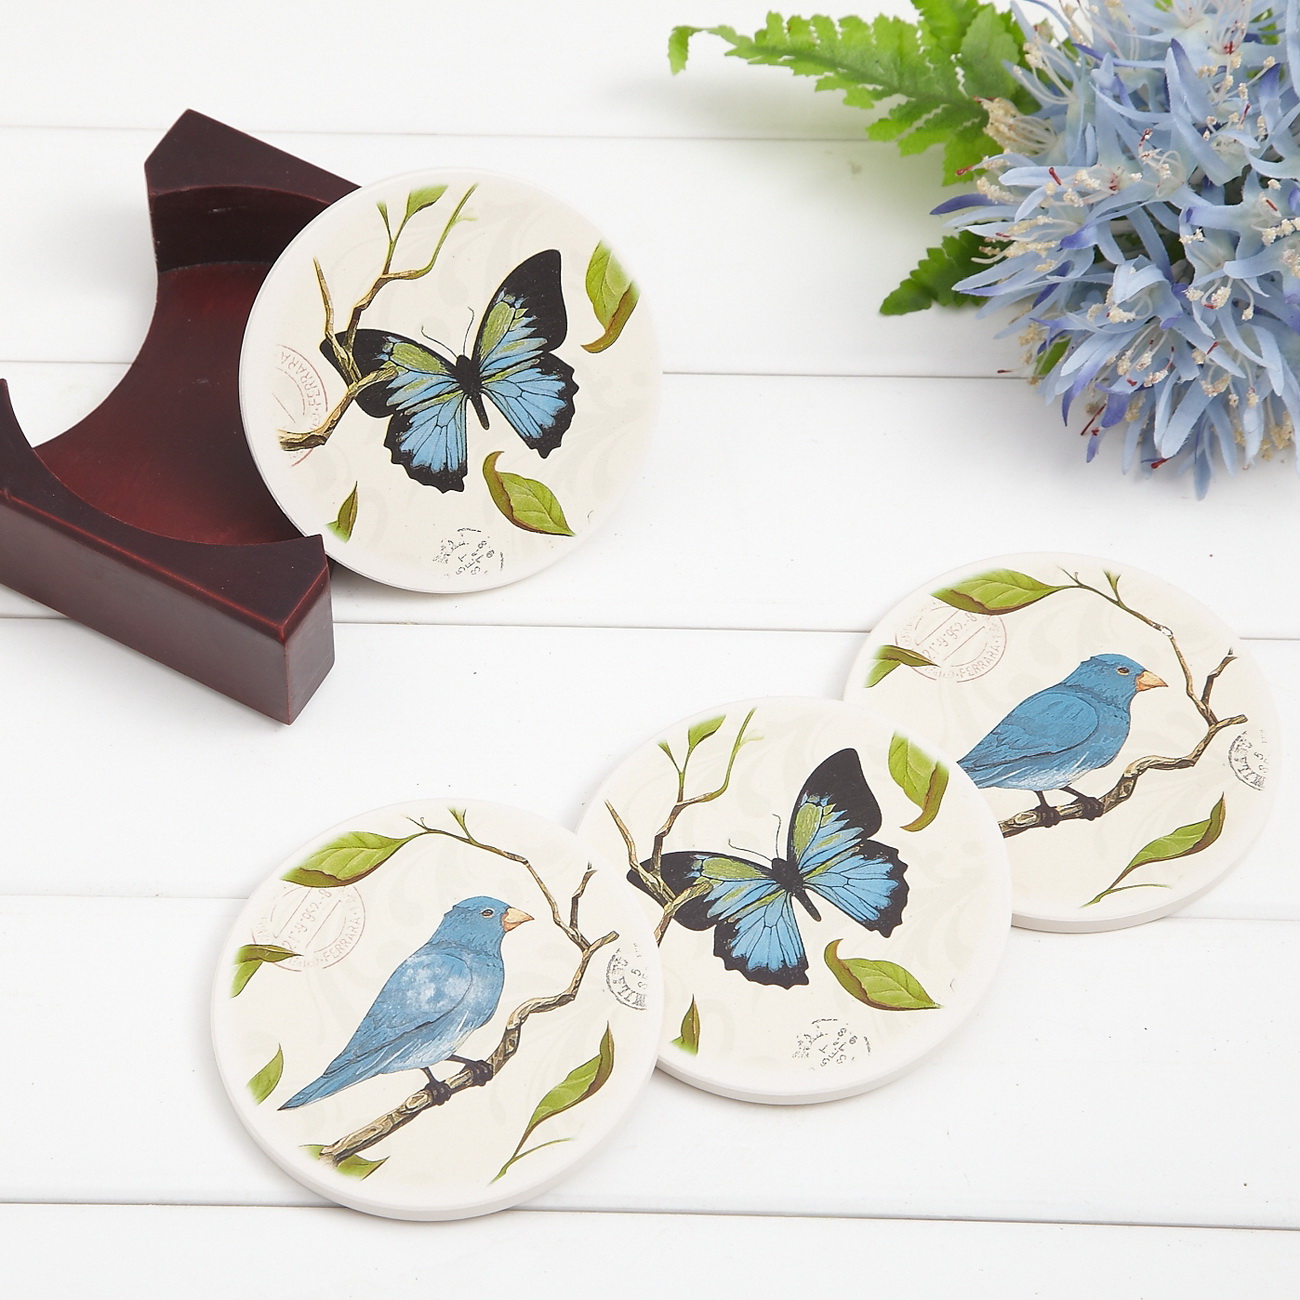 可可家2015新品欧式创意陶瓷吸水杯垫4件套送收纳木架格林